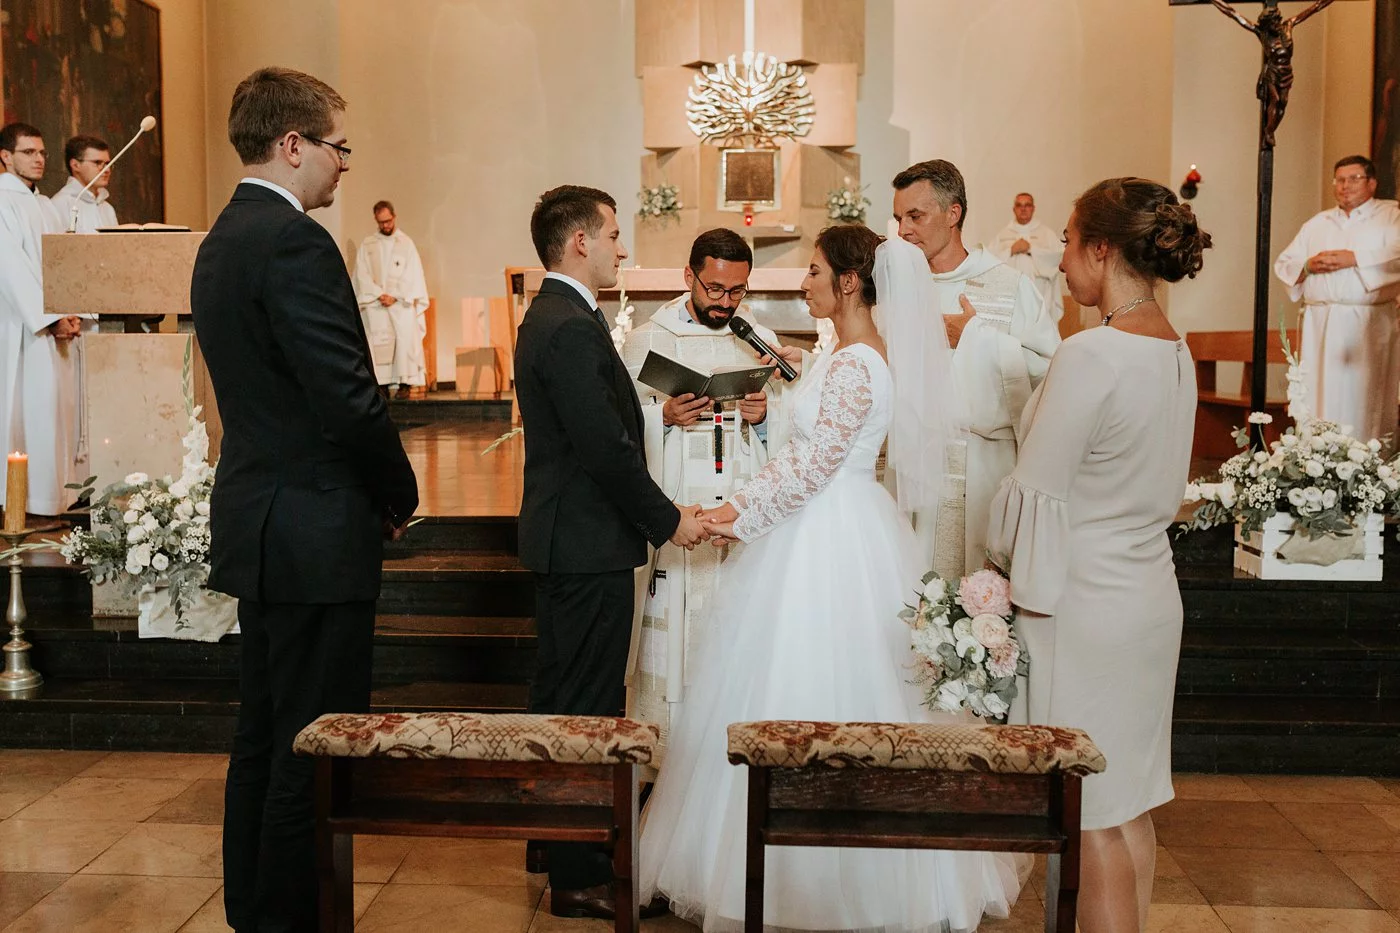 Dominika & Aleksander - Rustykalne wesele w stodole - Baborówko 53